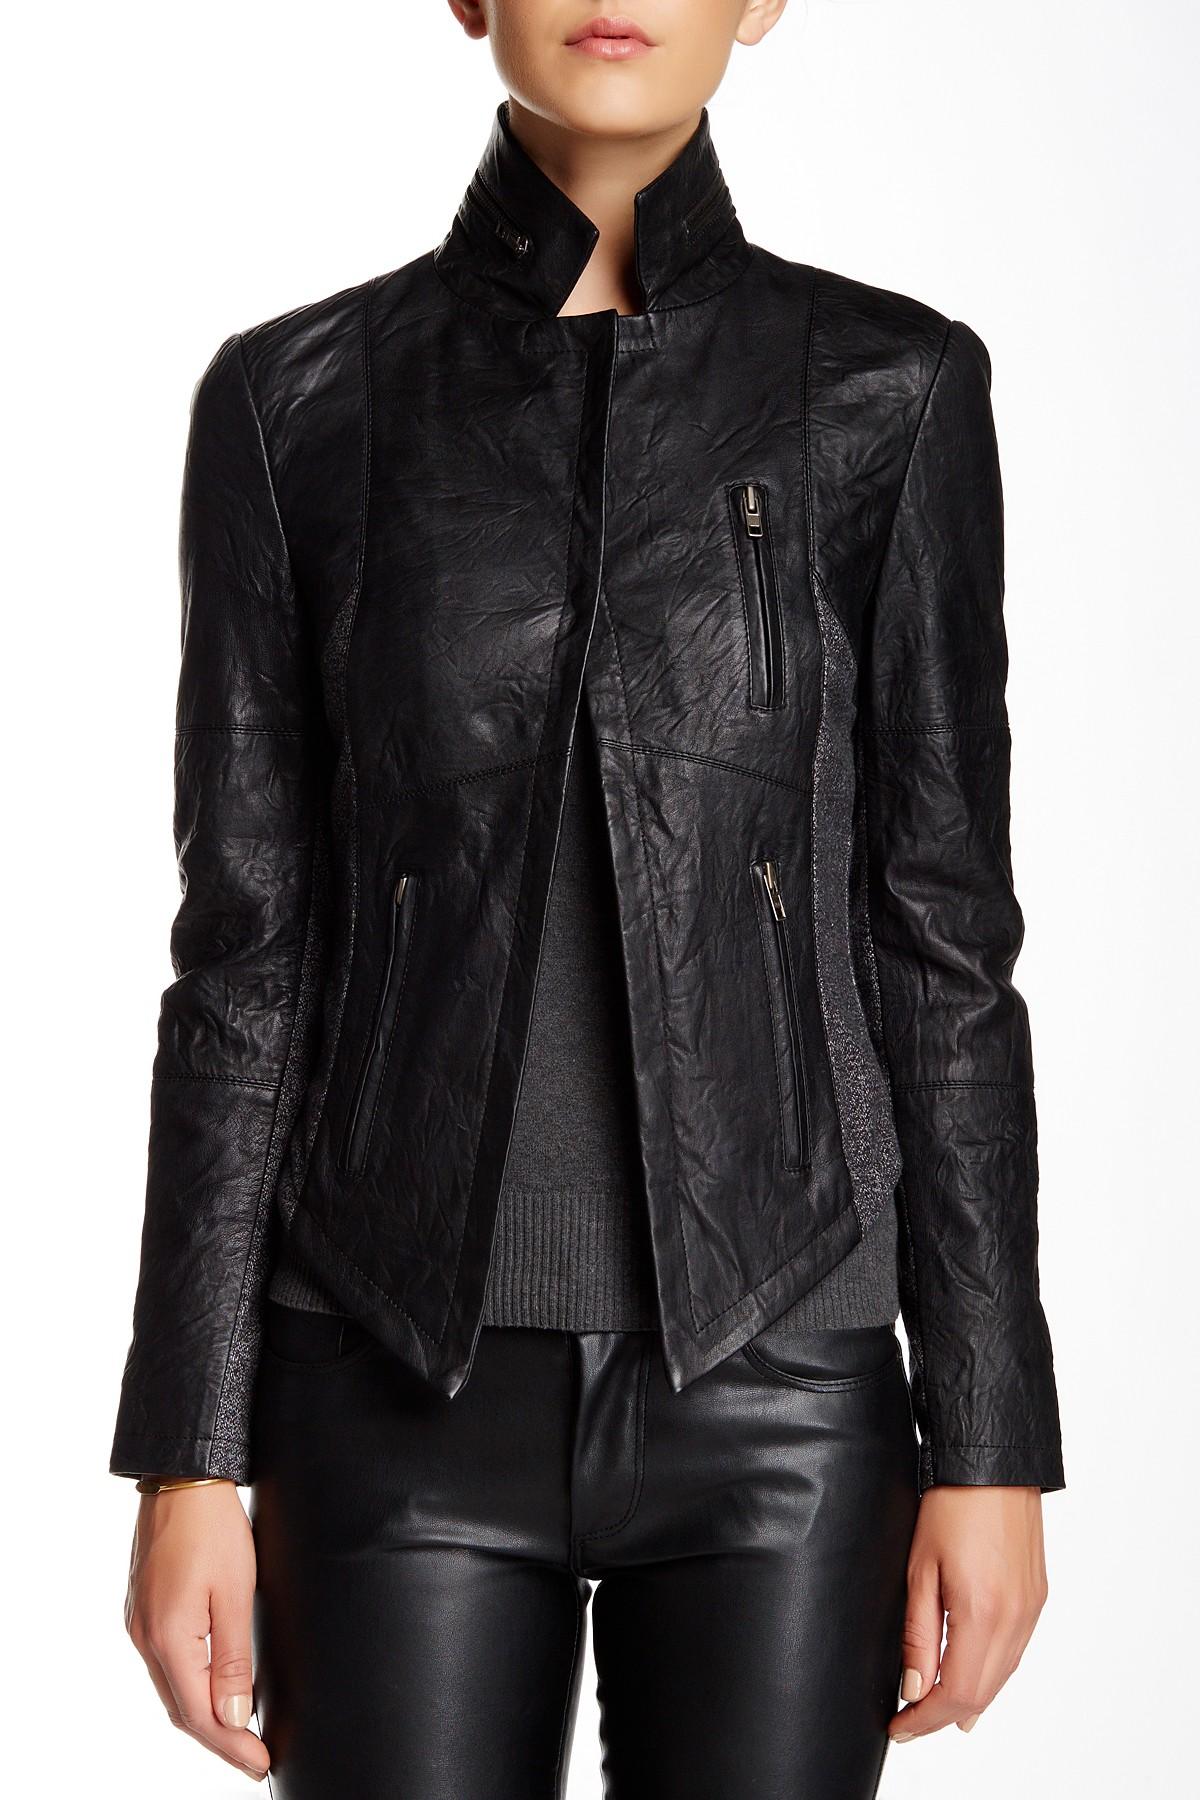 Lyst - Walter Baker Nori Leather Jacket in Black